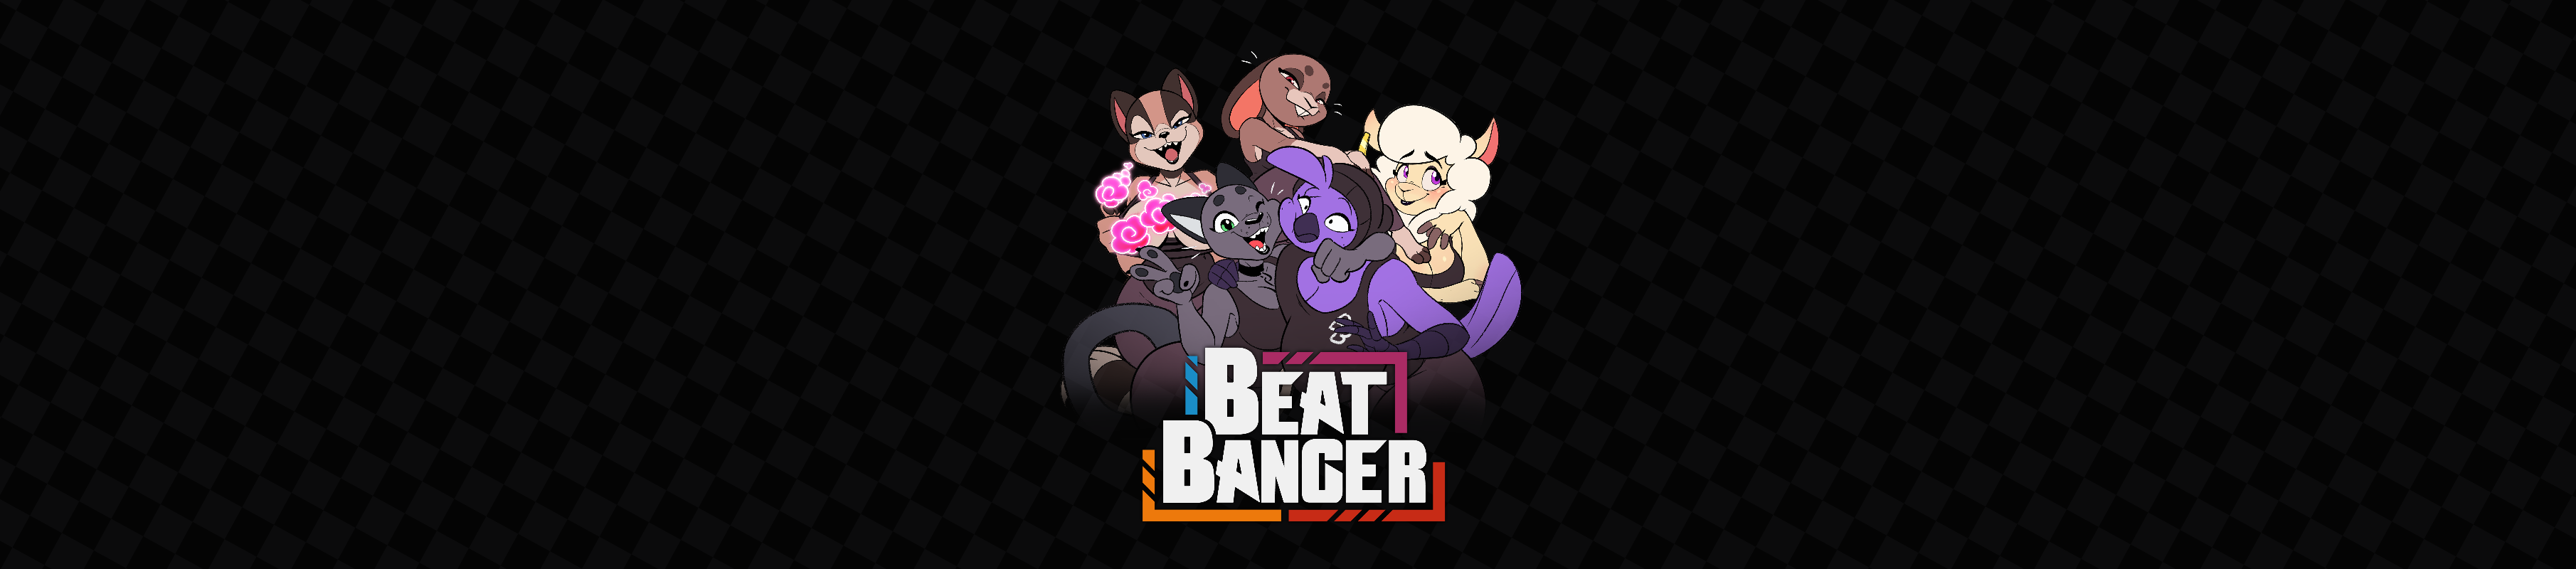 Beat banger legacy mods